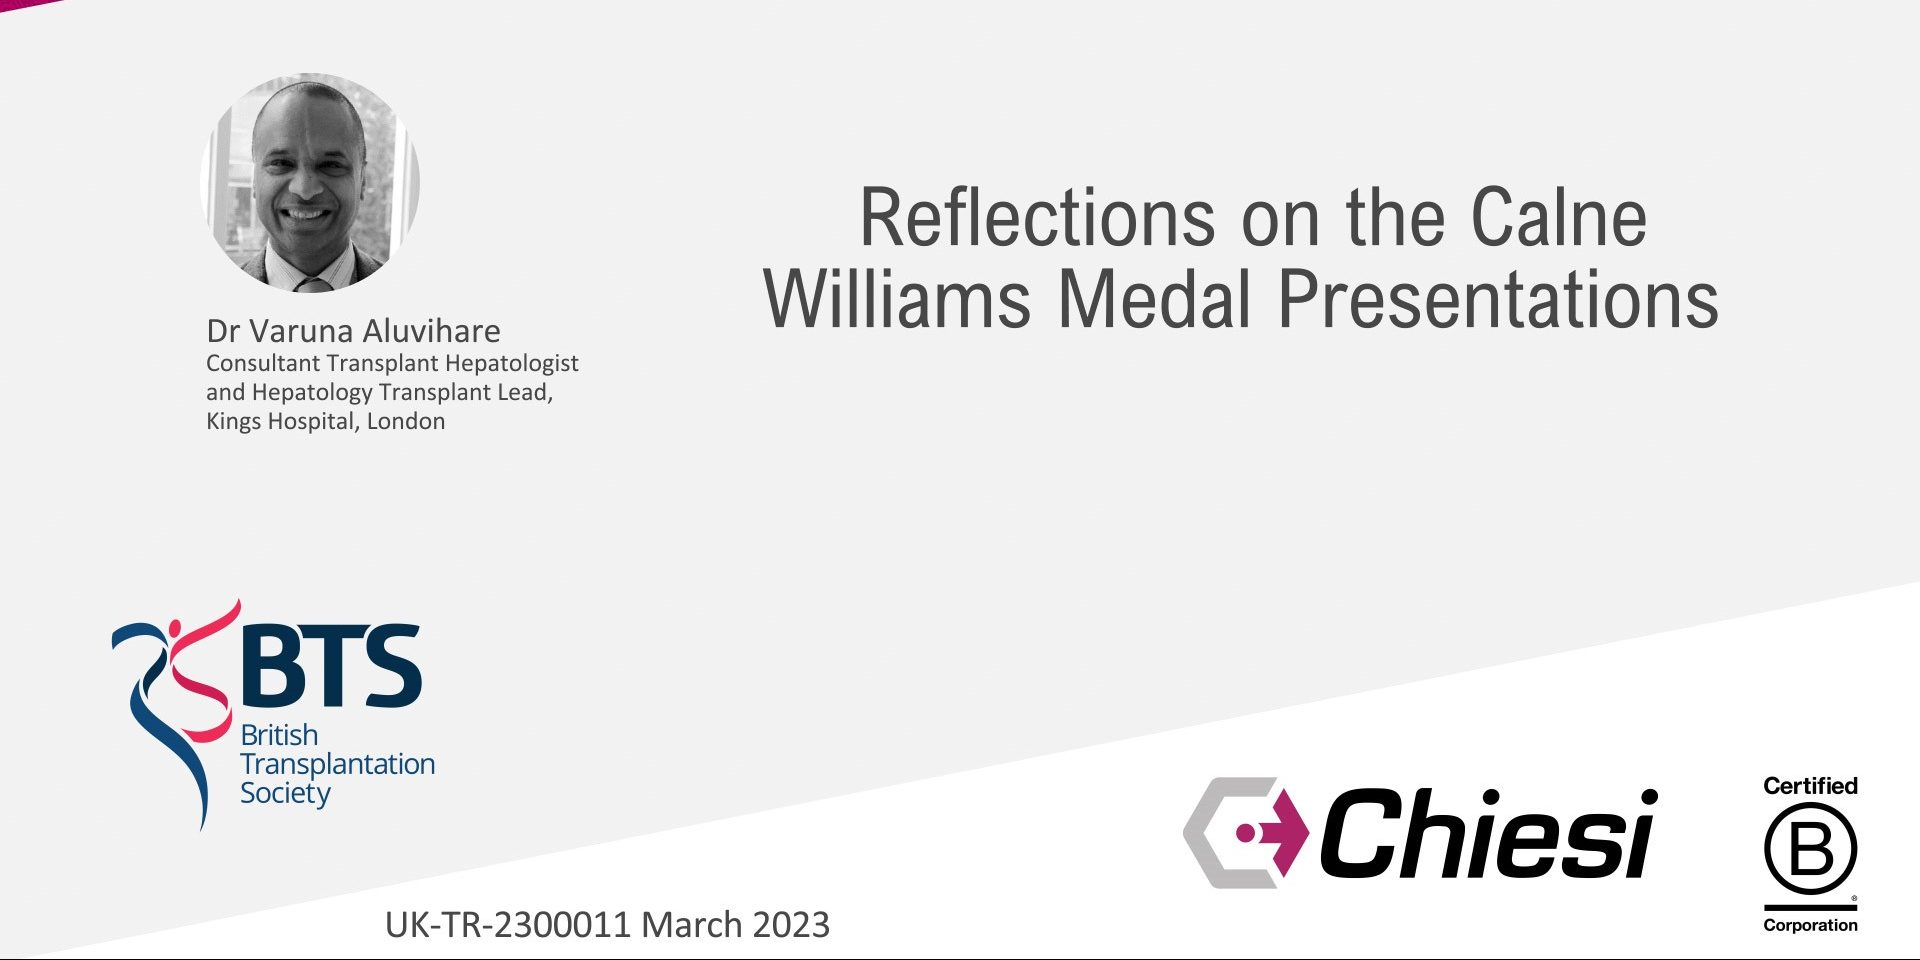 Calne Williams Medal Presentations (BTS Congress 2023)